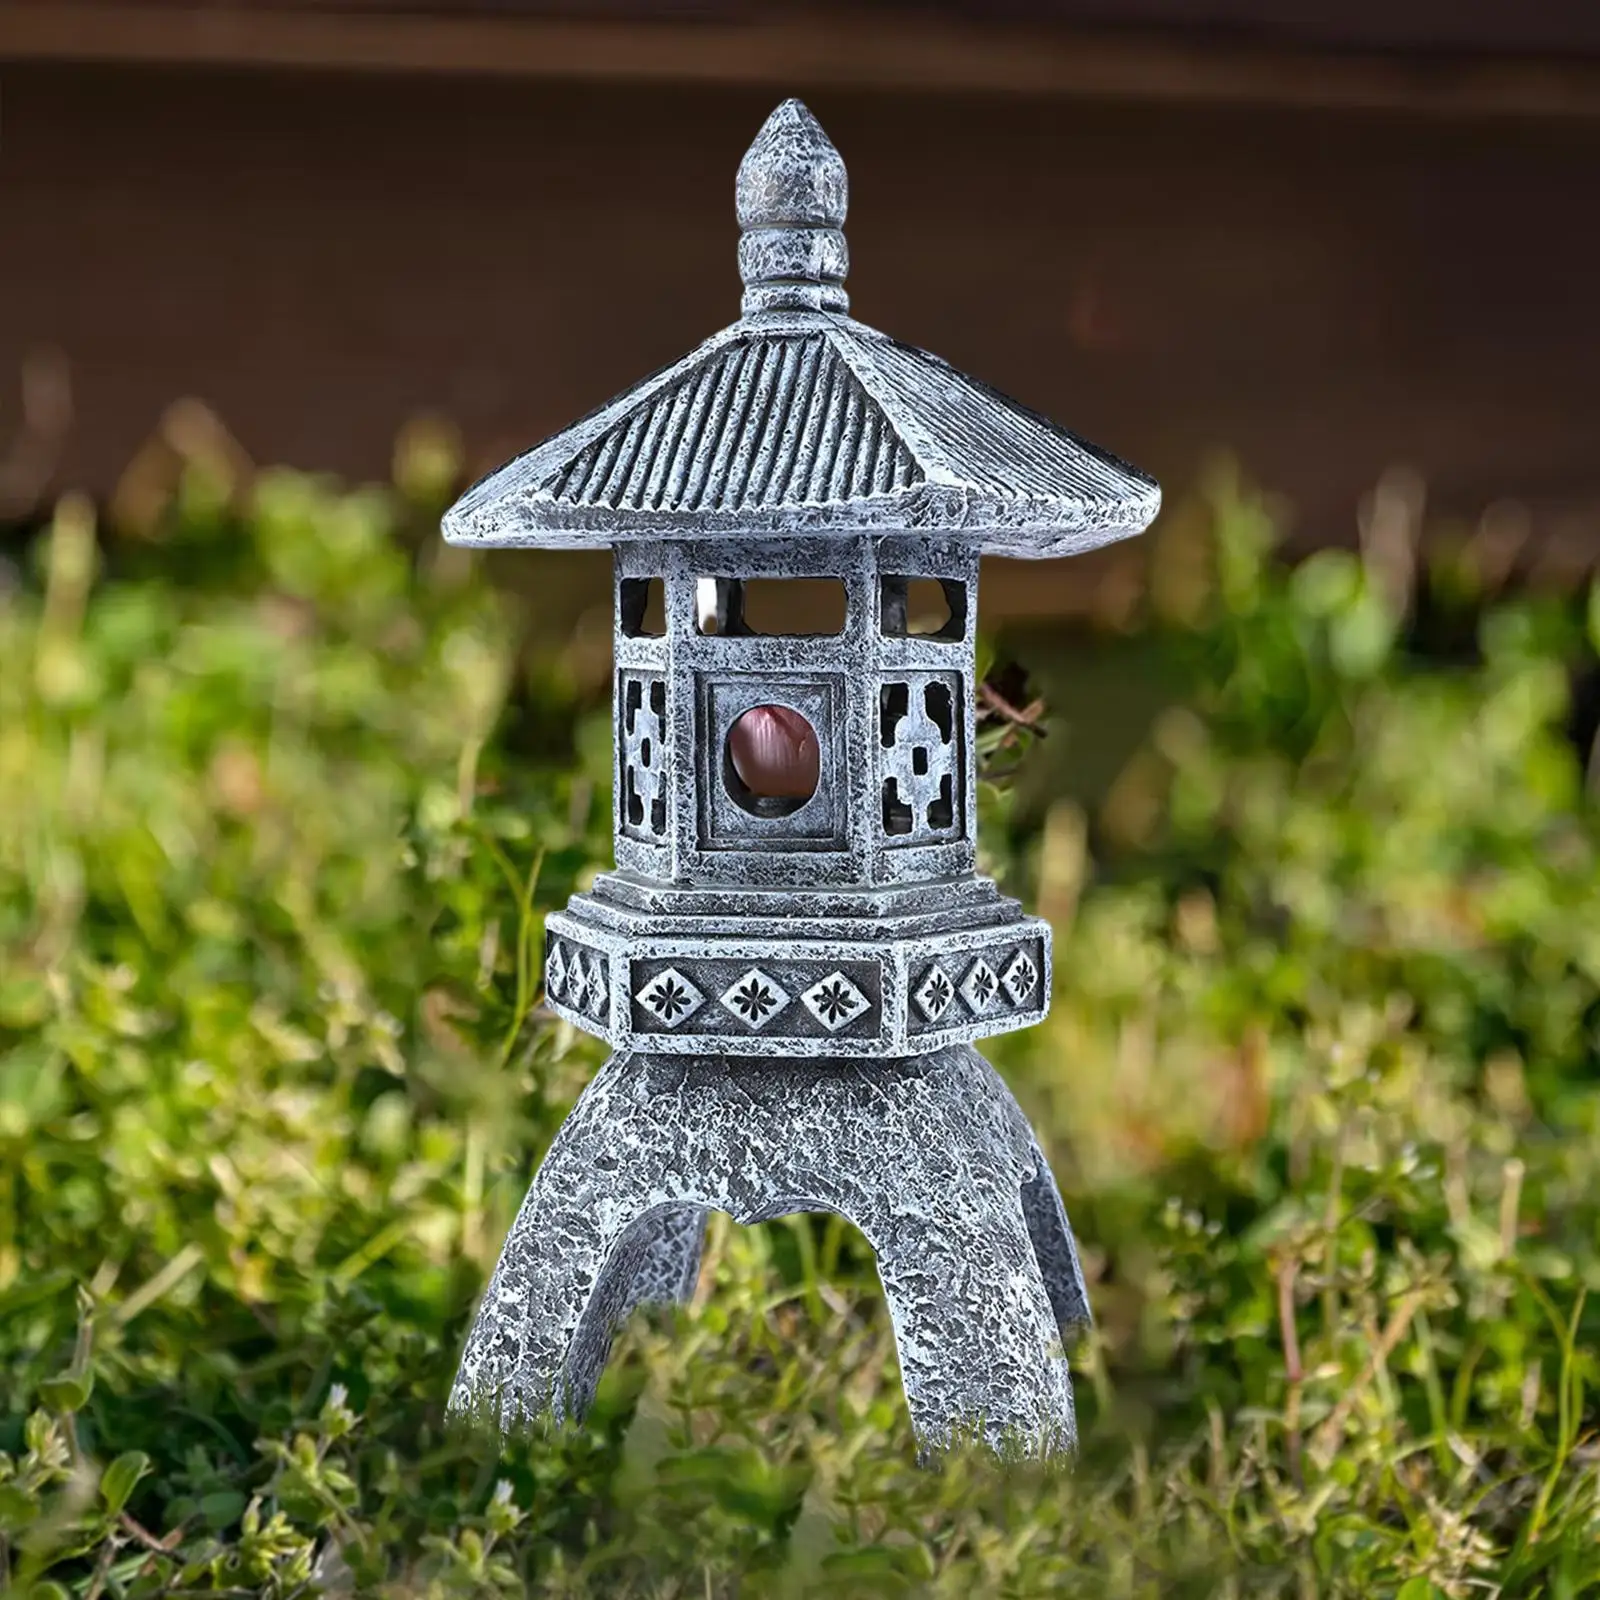 Outdoor Garden Light Statue Resin Lamp Sculpture Durable Energy Saving Solar Pagoda Lantern for Lawn Yard Farmhouse Patio Decor